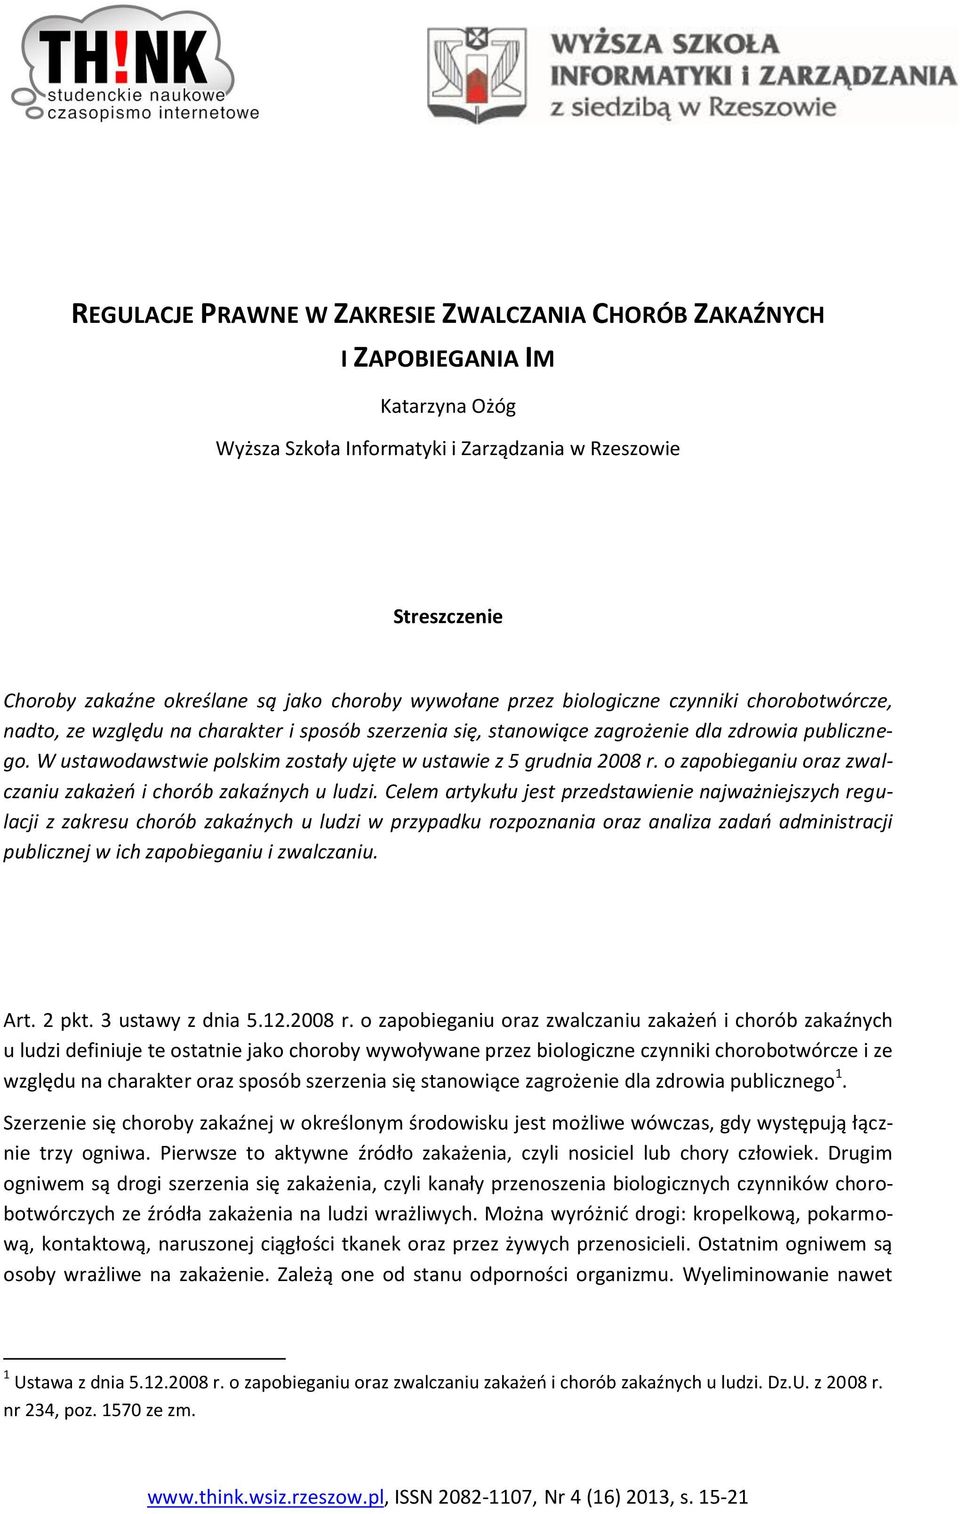 W ustawodawstwie polskim zostały ujęte w ustawie z 5 grudnia 2008 r. o zapobieganiu oraz zwalczaniu zakażeń i chorób zakaźnych u ludzi.